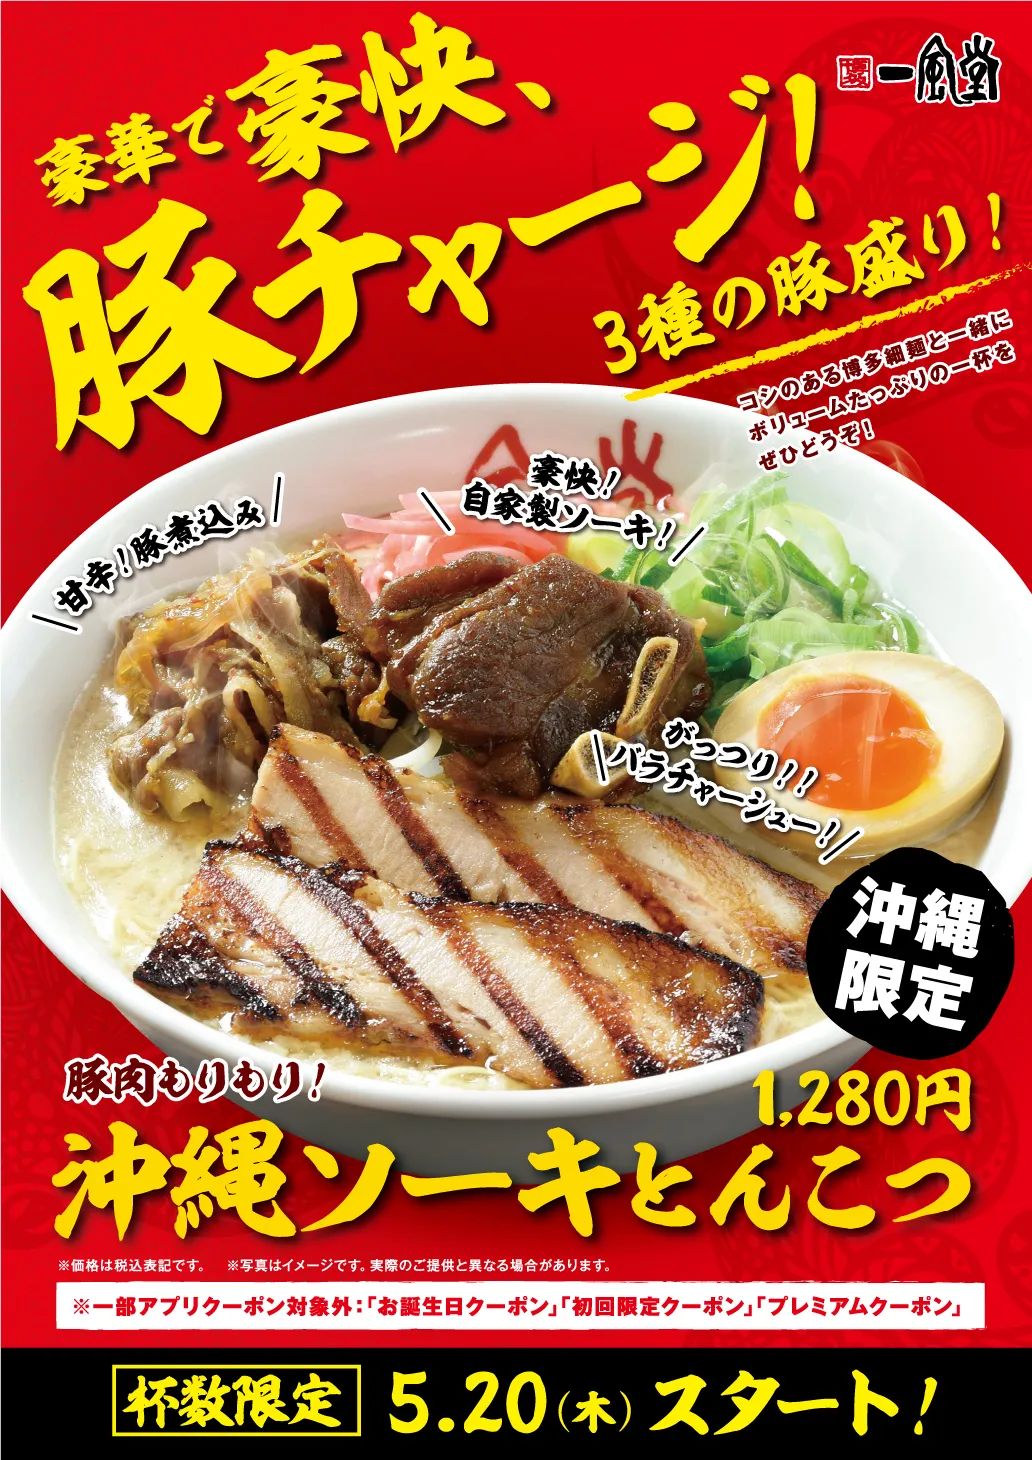 30款日本餐饮拉面海报设计